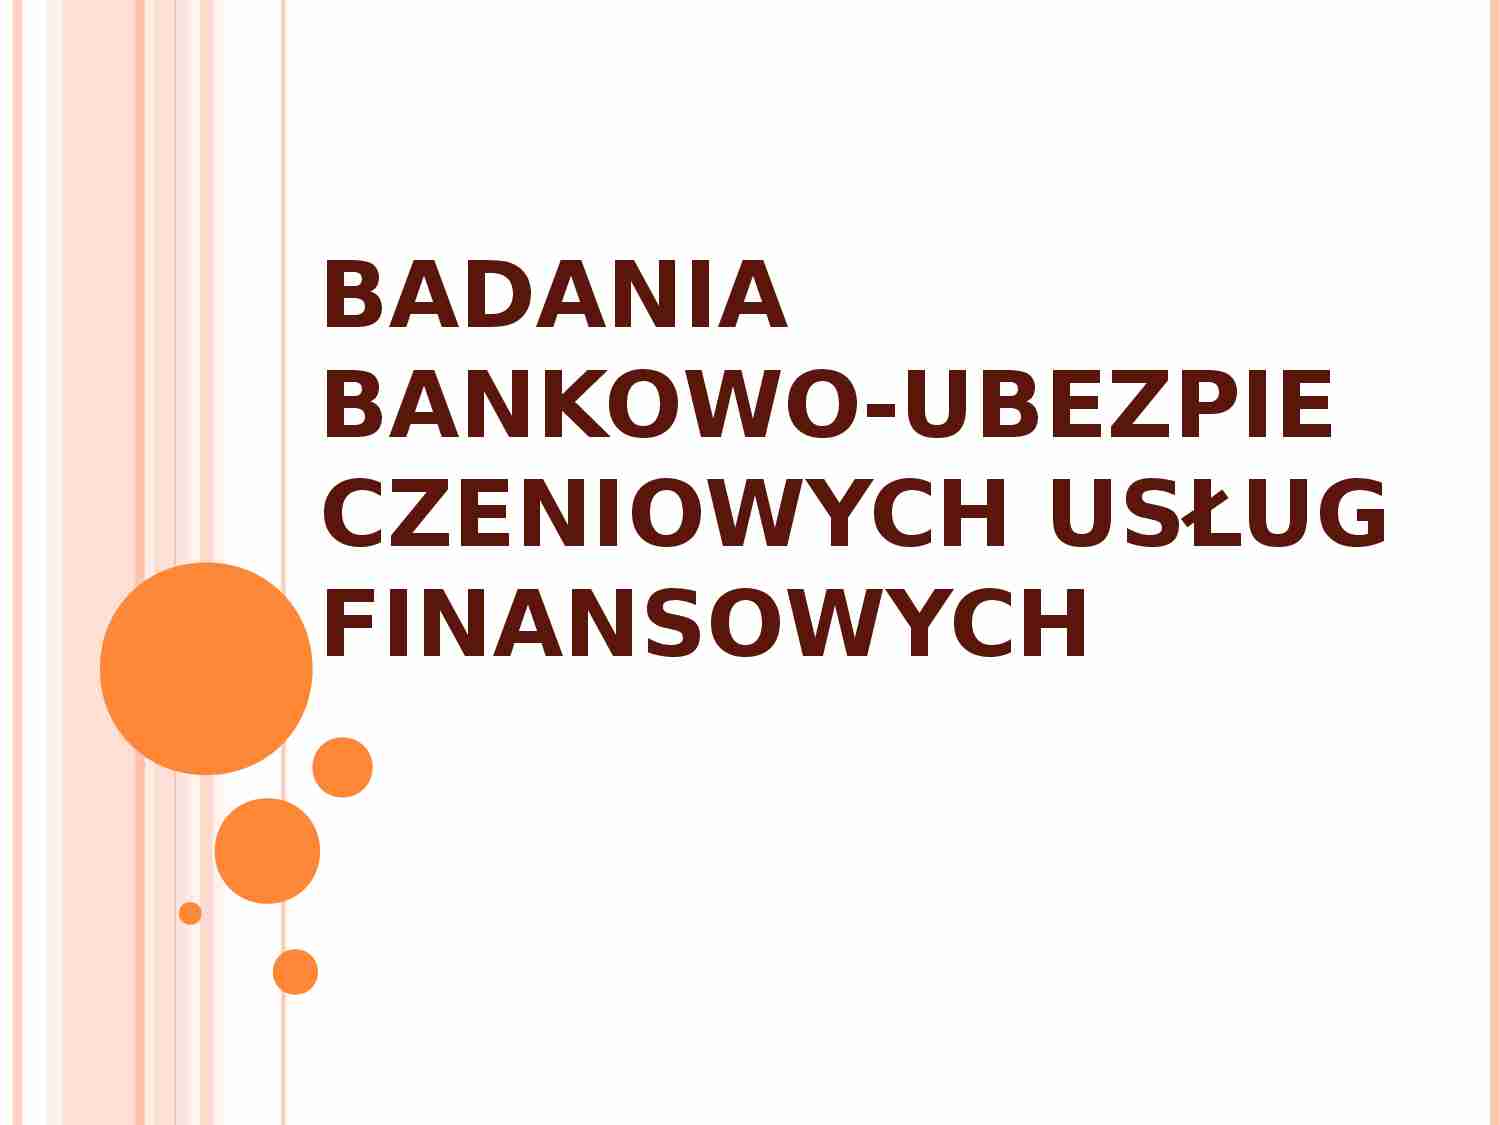 Badania bankowo-ubezpieczeniowych usług finansowych - strona 1